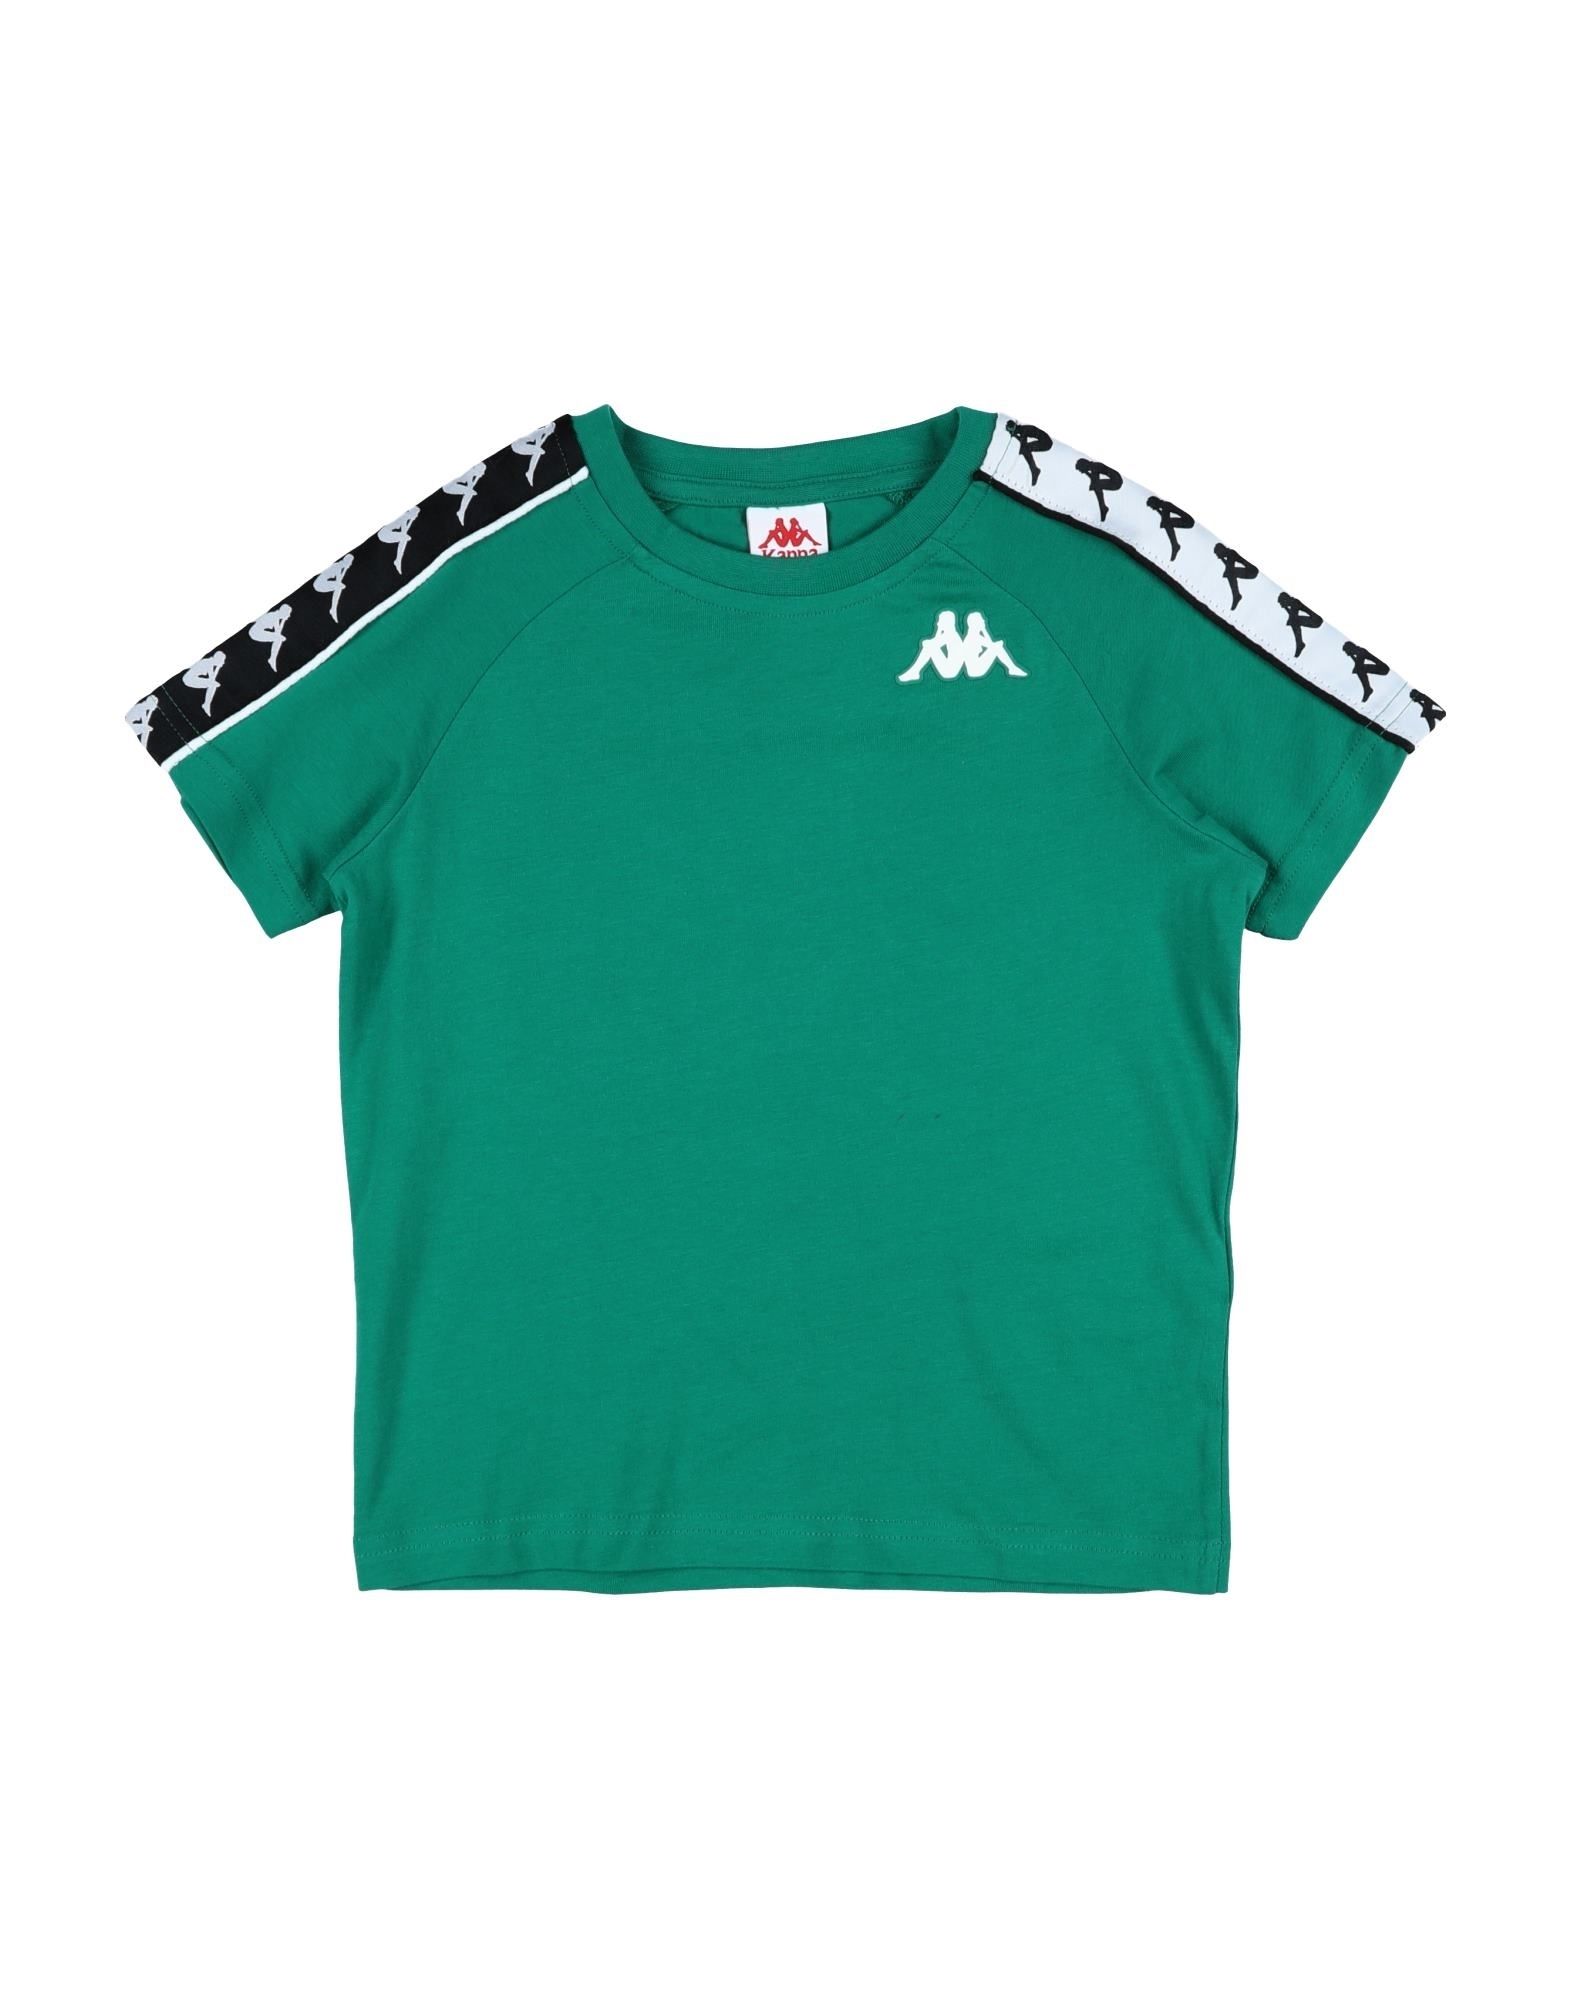 Kappa Kids' T-shirts In Green